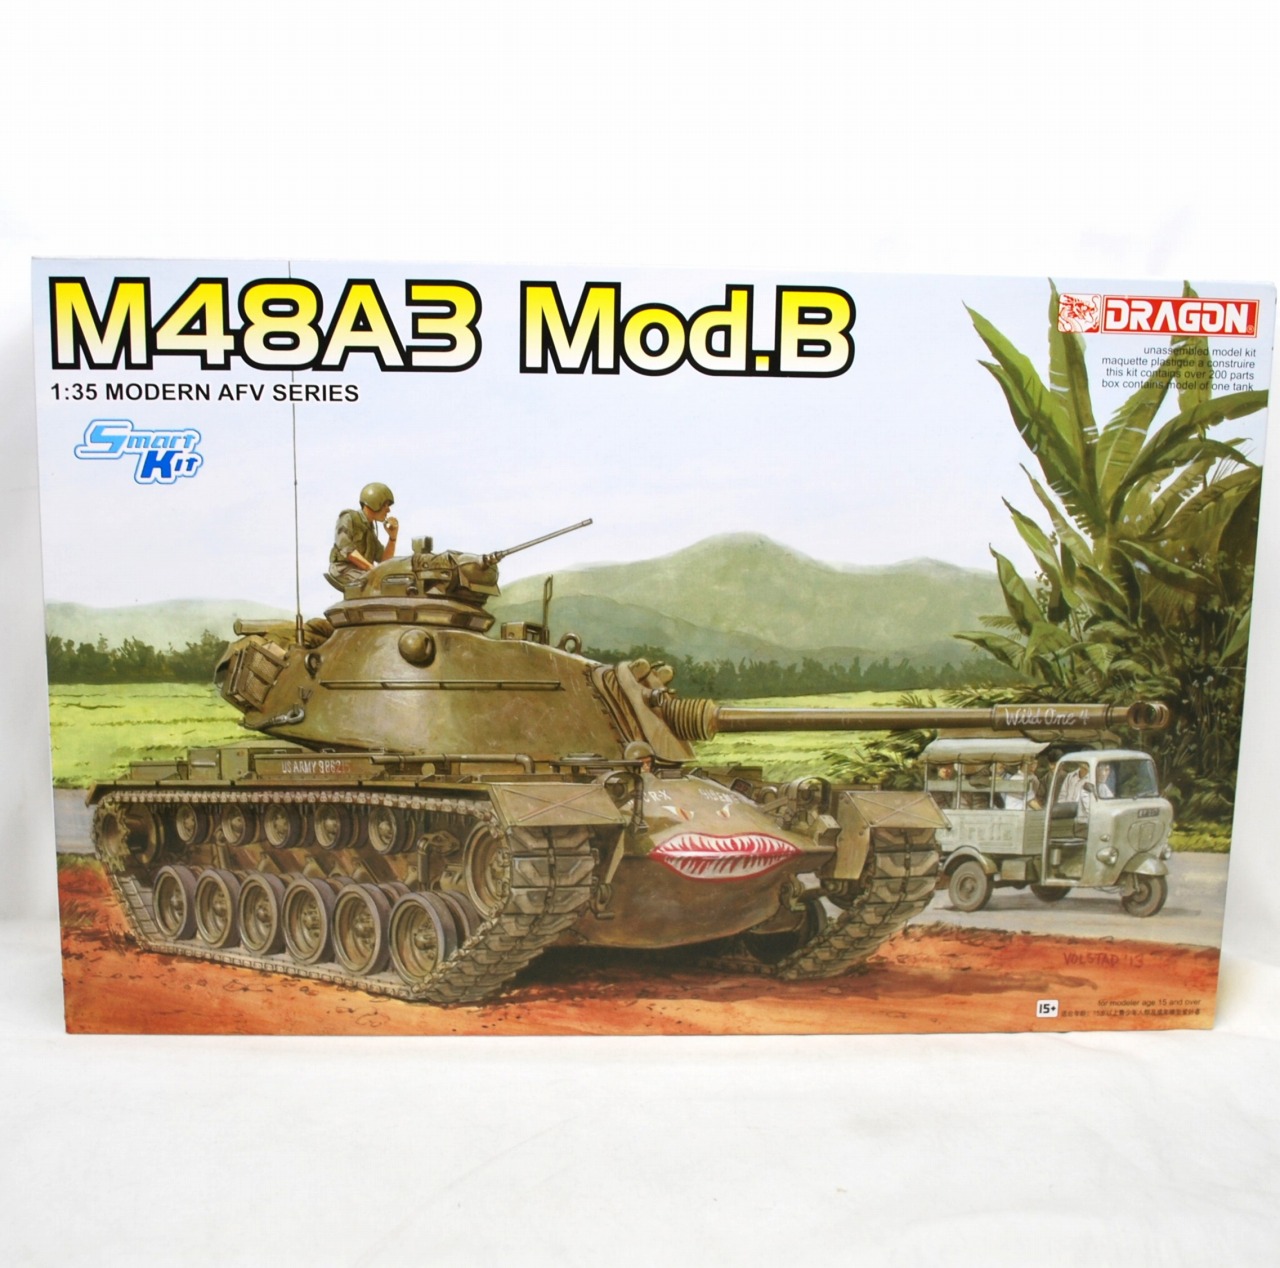 DRAGON 1/35 M48A3 Mod.B